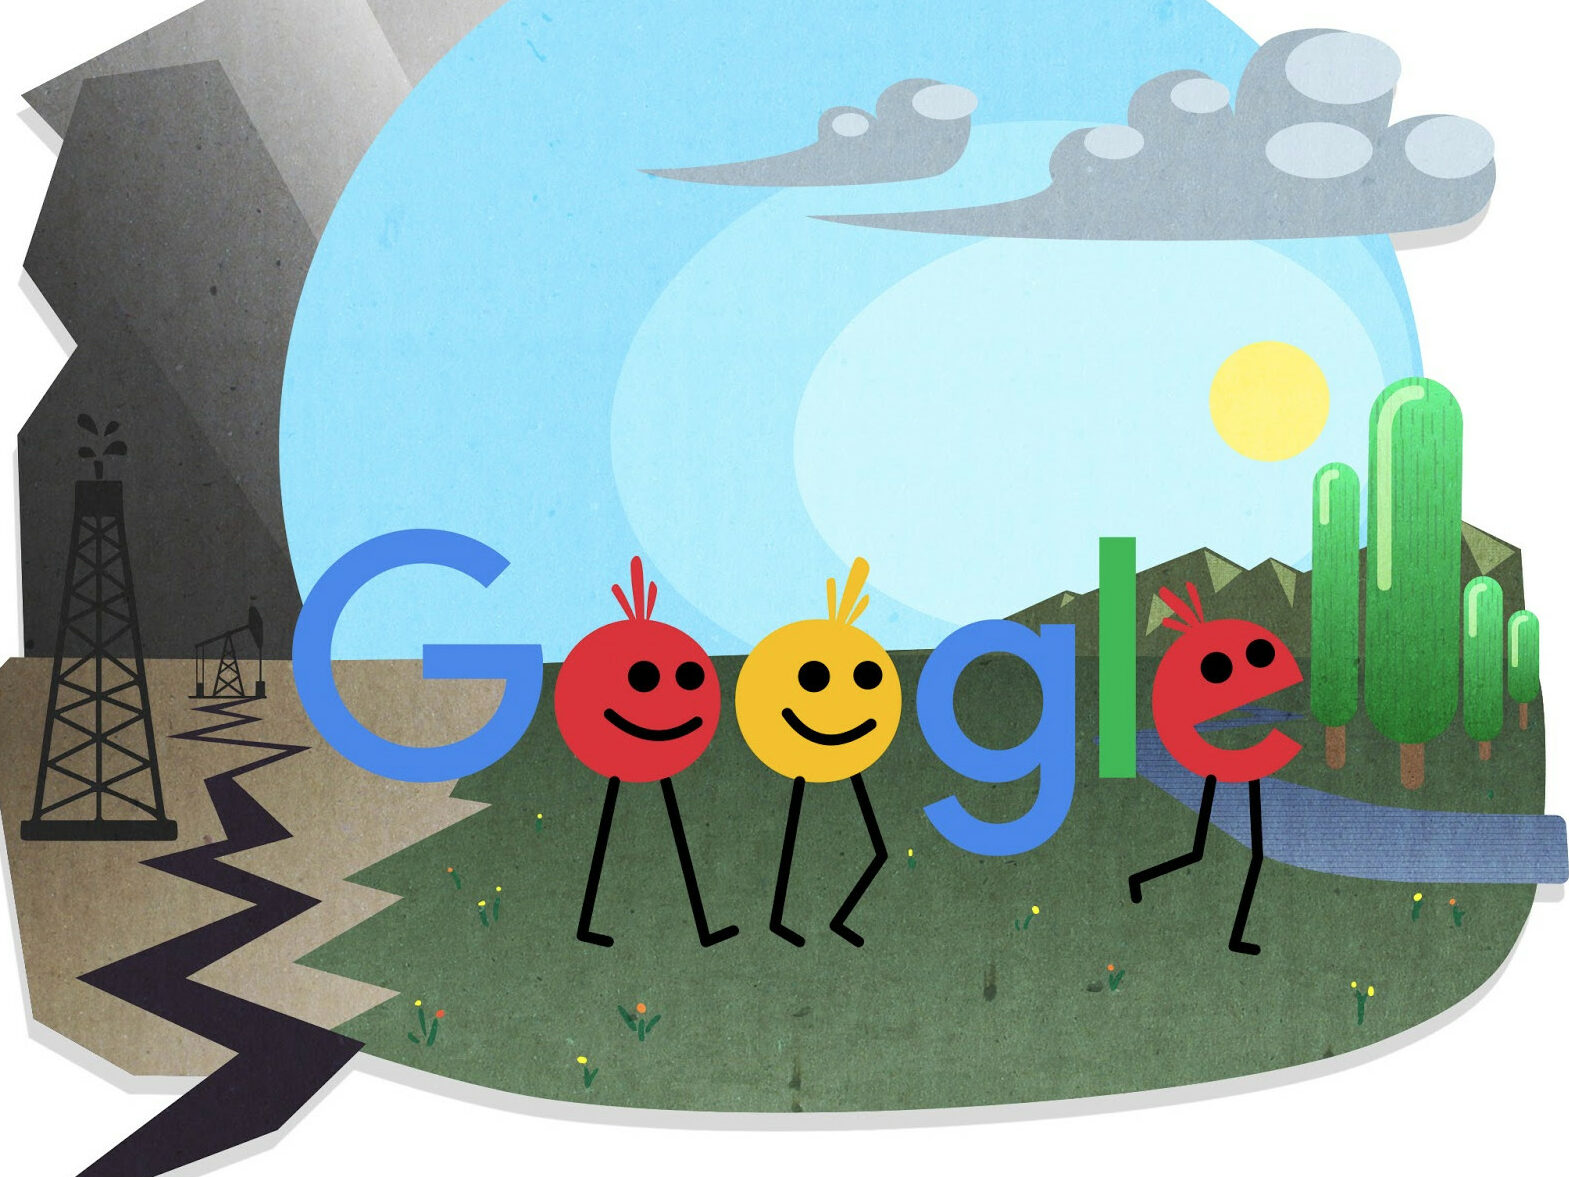 El logo de Google donde las o y la e son caricaturas y caminan desde un panorama oscuro y tenebroso a uno verde y brillante